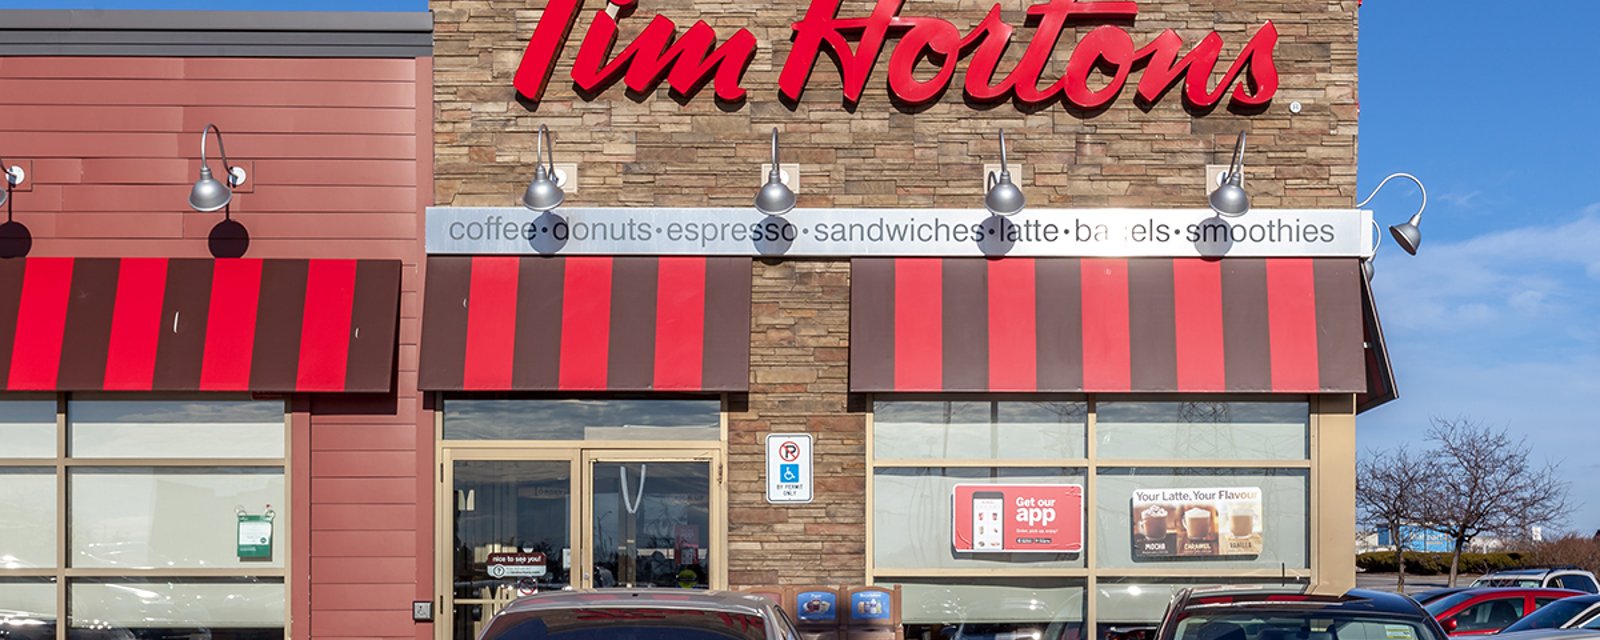 Tim Hortons offre enfin du lait d'amande à ses clients du Canada